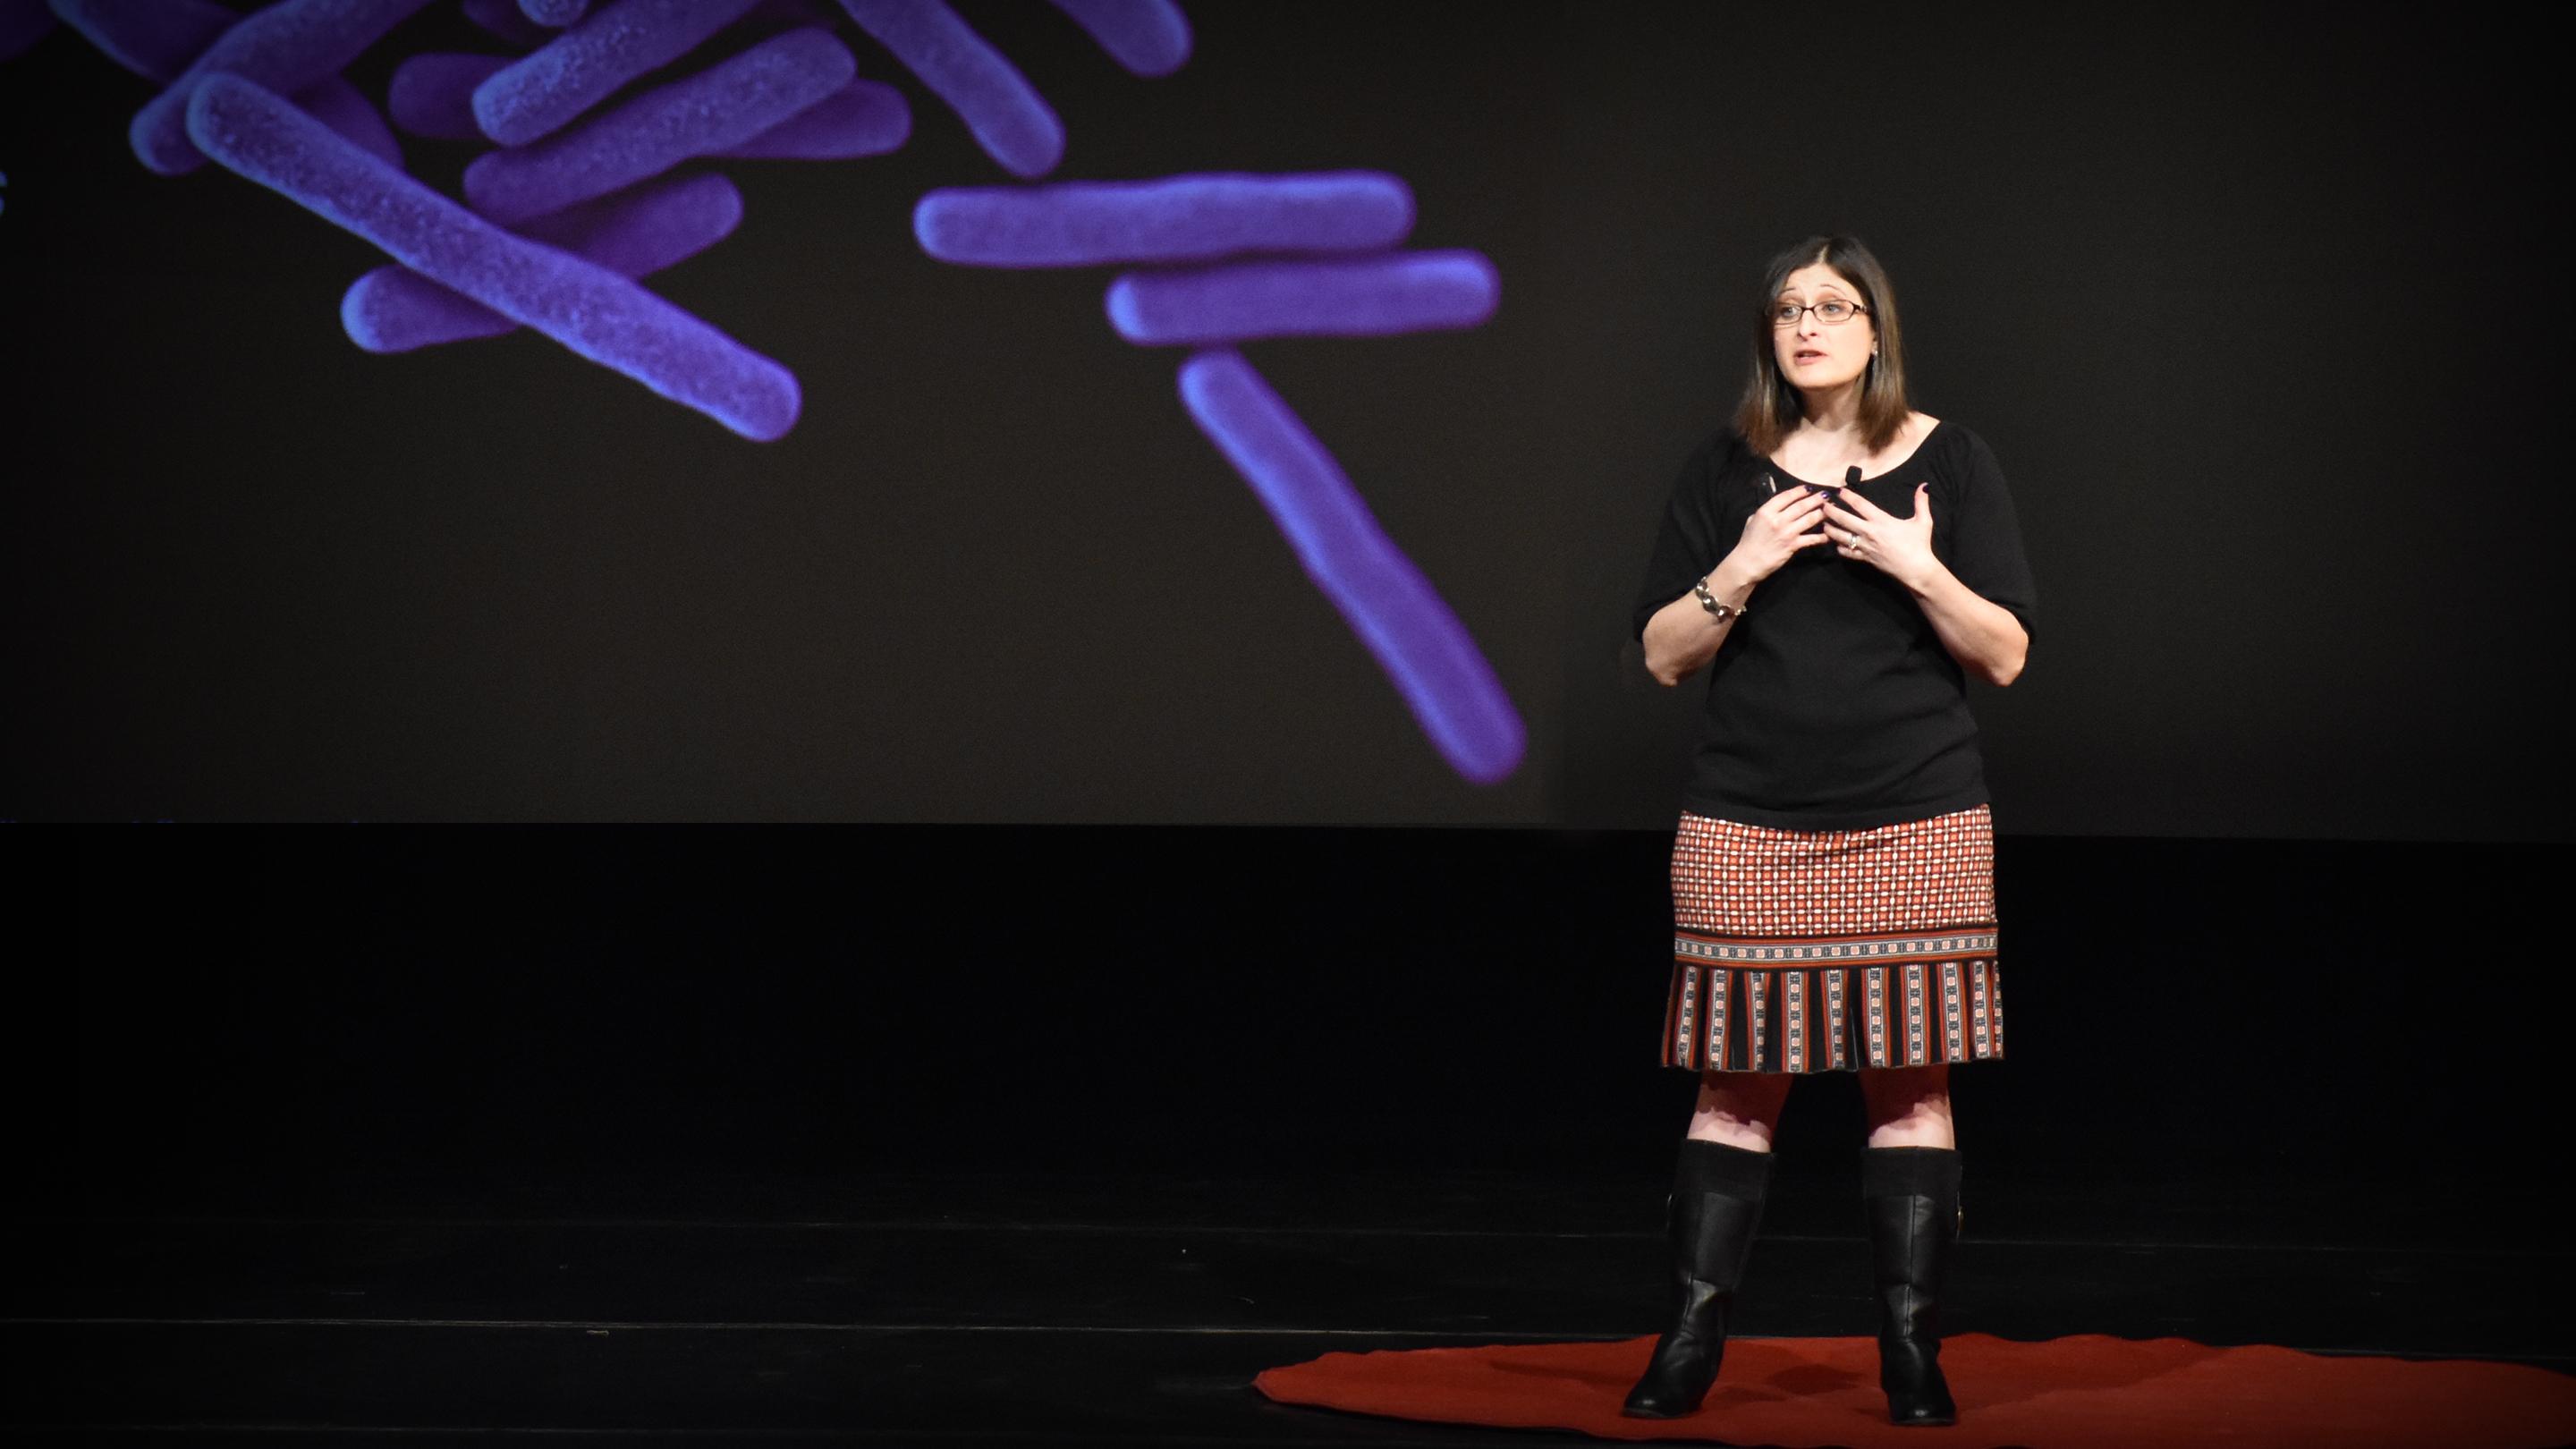 Una perspectiva evolutiva sobre la salud y las enfermedades humanas | Lara Durgavich